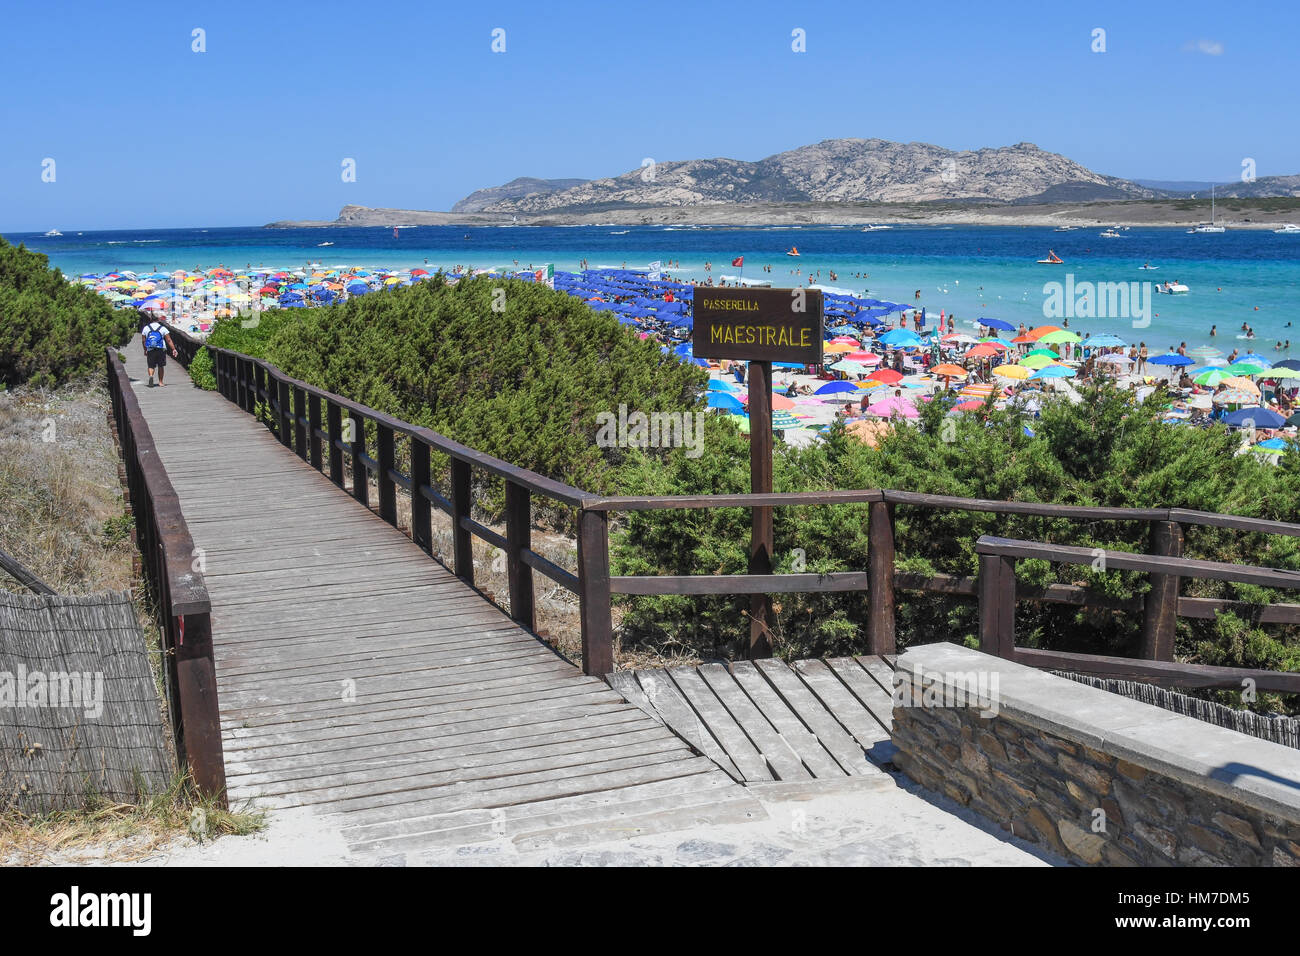 Spiaggia della Pelosa sul golfo dell' Asinara Foto Stock